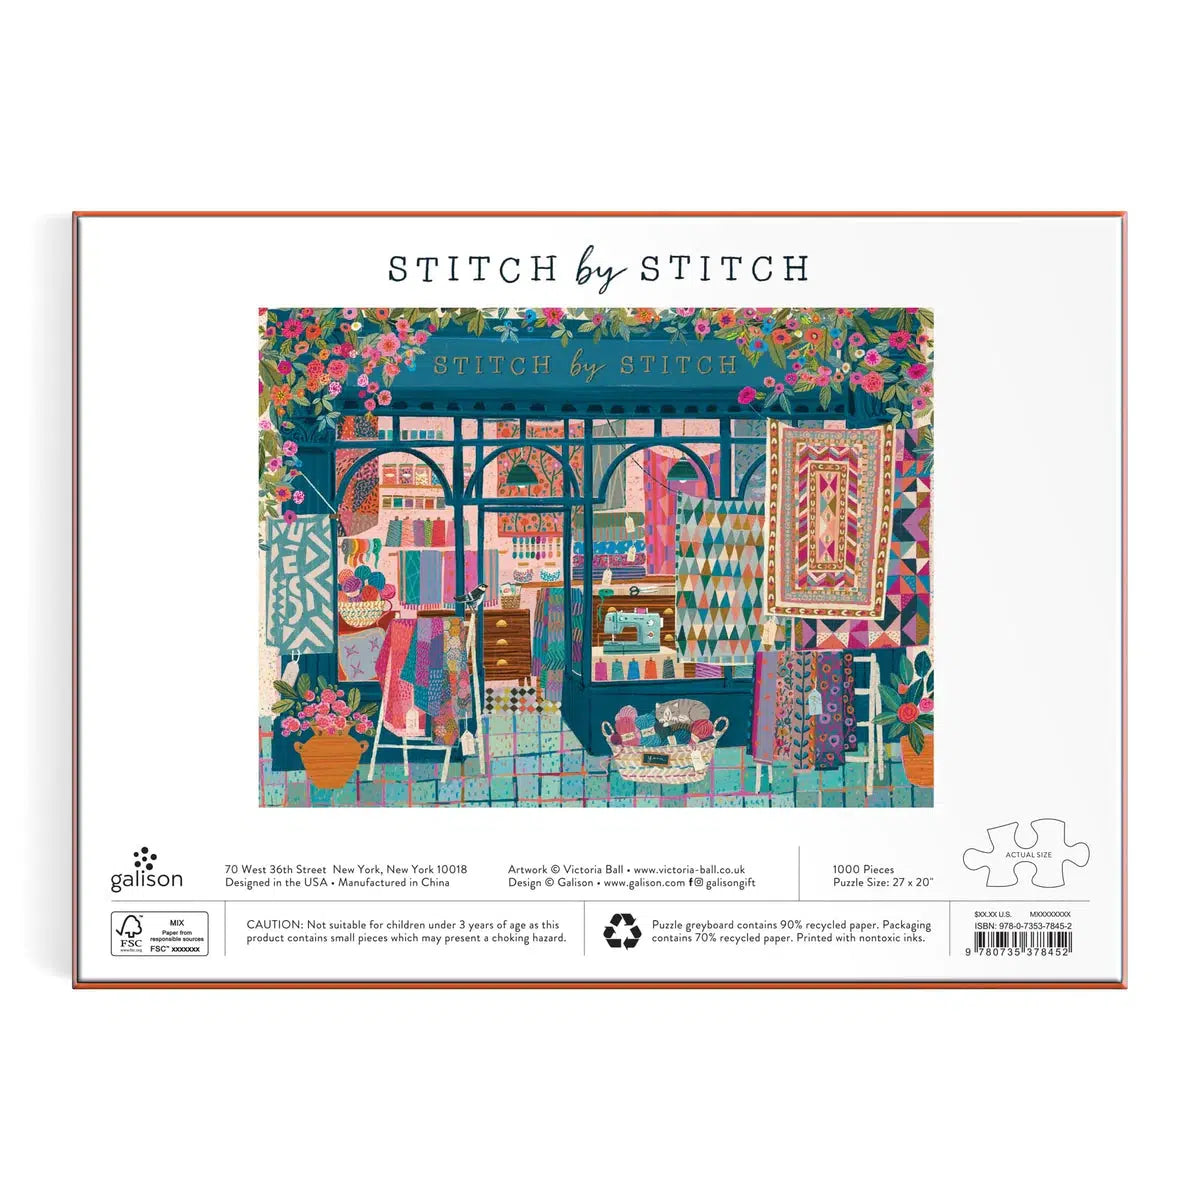 Stitch by Stitch 1000 Piece Jigsaw Puzzle Galison